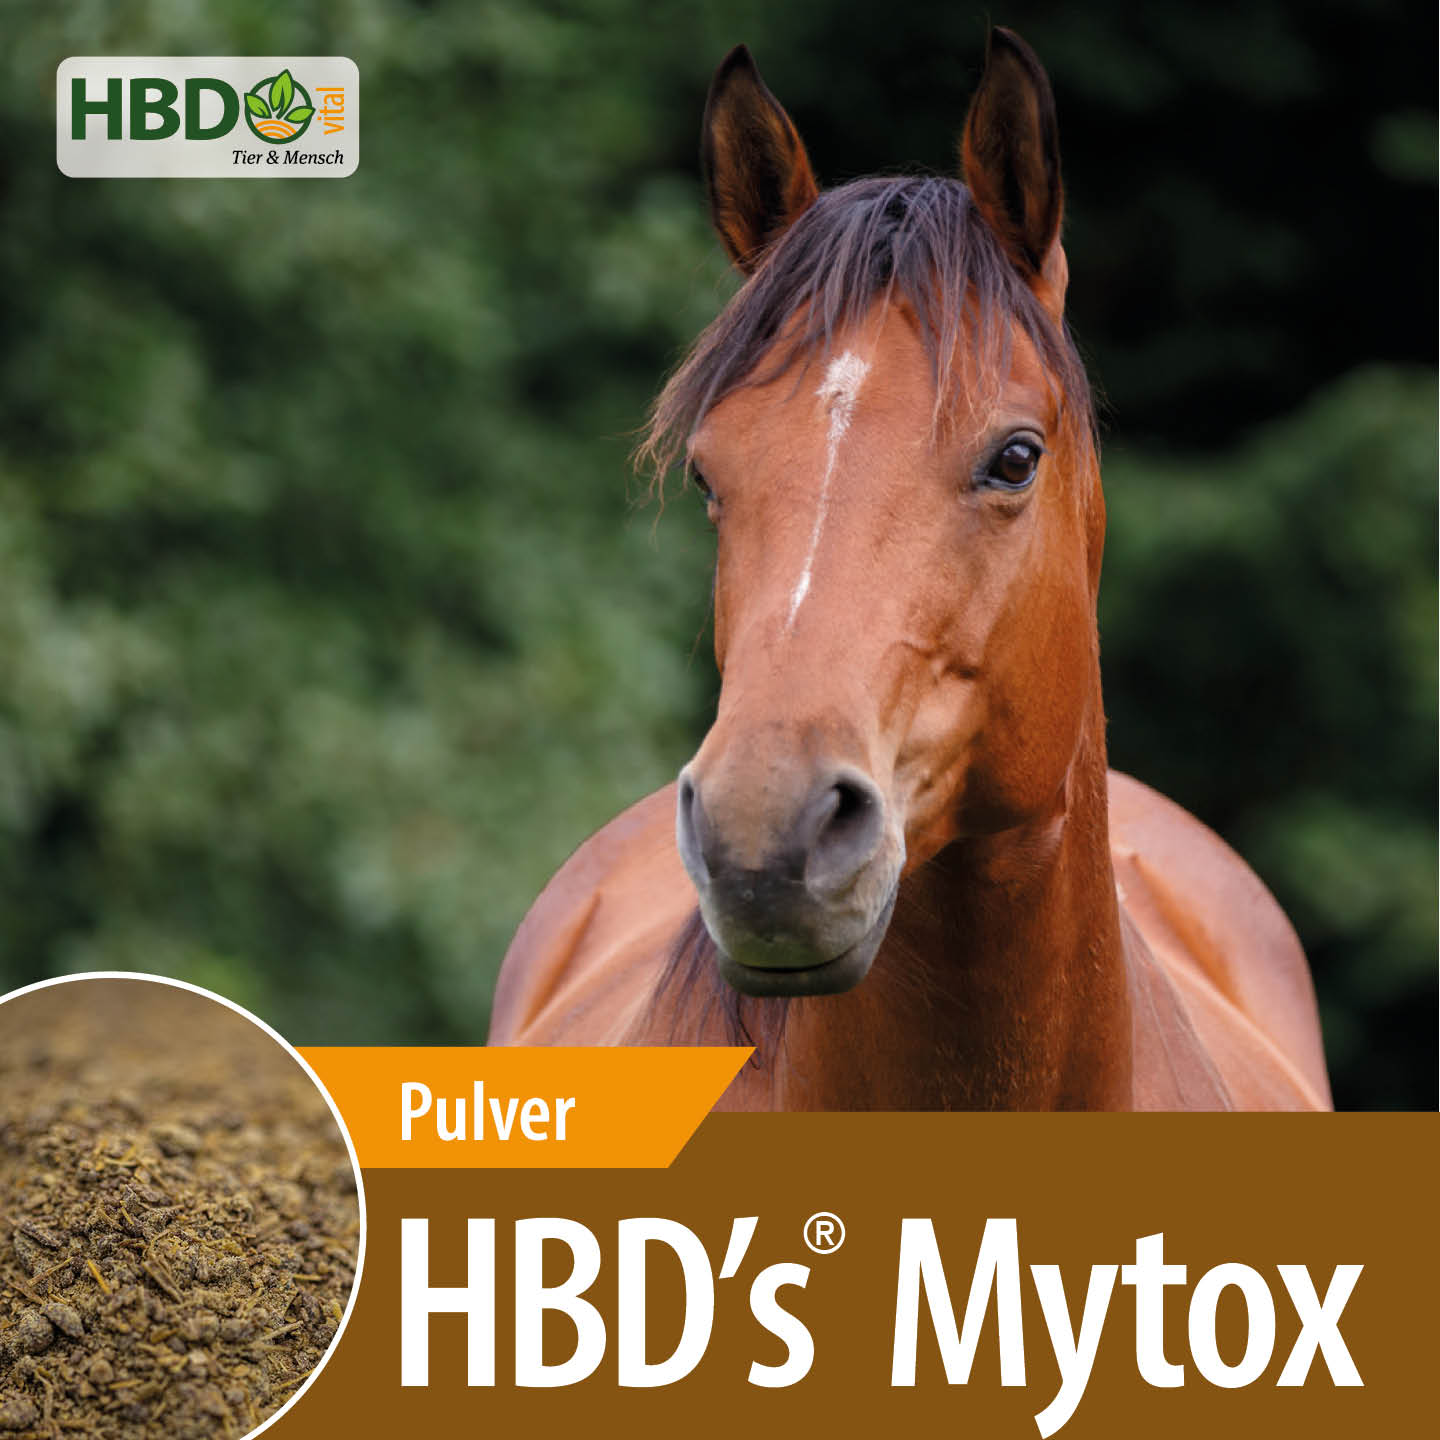 Shopbild für HBD’s Mytox - Das Bild zeigt den Produktnamen sowie den Hinweis, dass es sich um ein Pulver handelt. Ein braunes Pferd ist zu sehen.